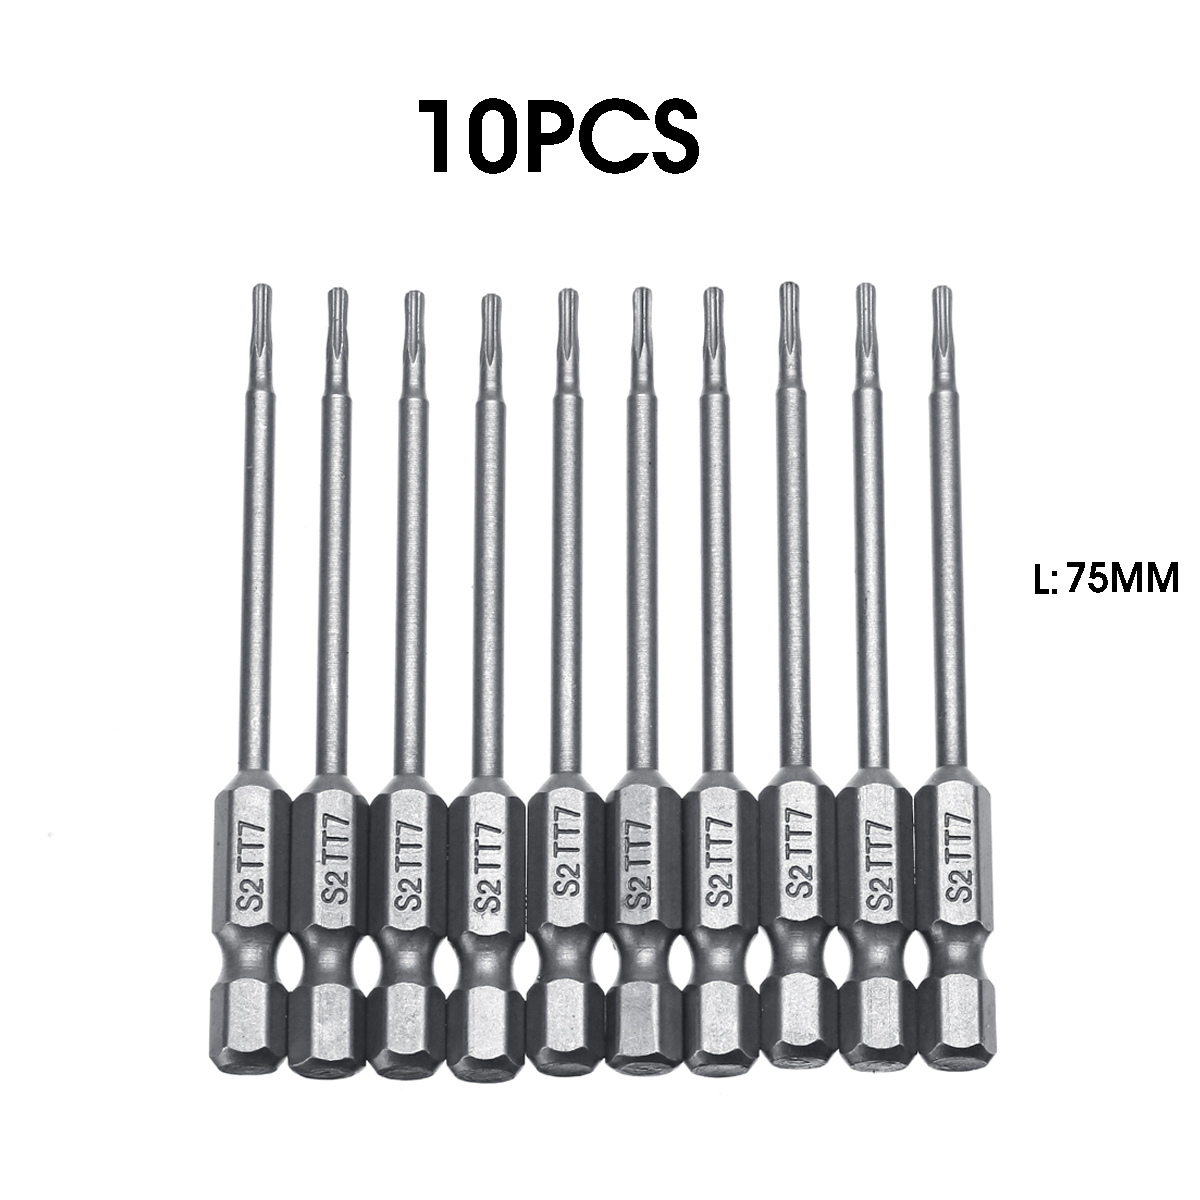 10pcs-TT6-TT40-Torx-Head-Screwdriver-Bit-75mm-Hex-Shank-Power-Drill-Screwdriver-Bits-Set-1550213-2